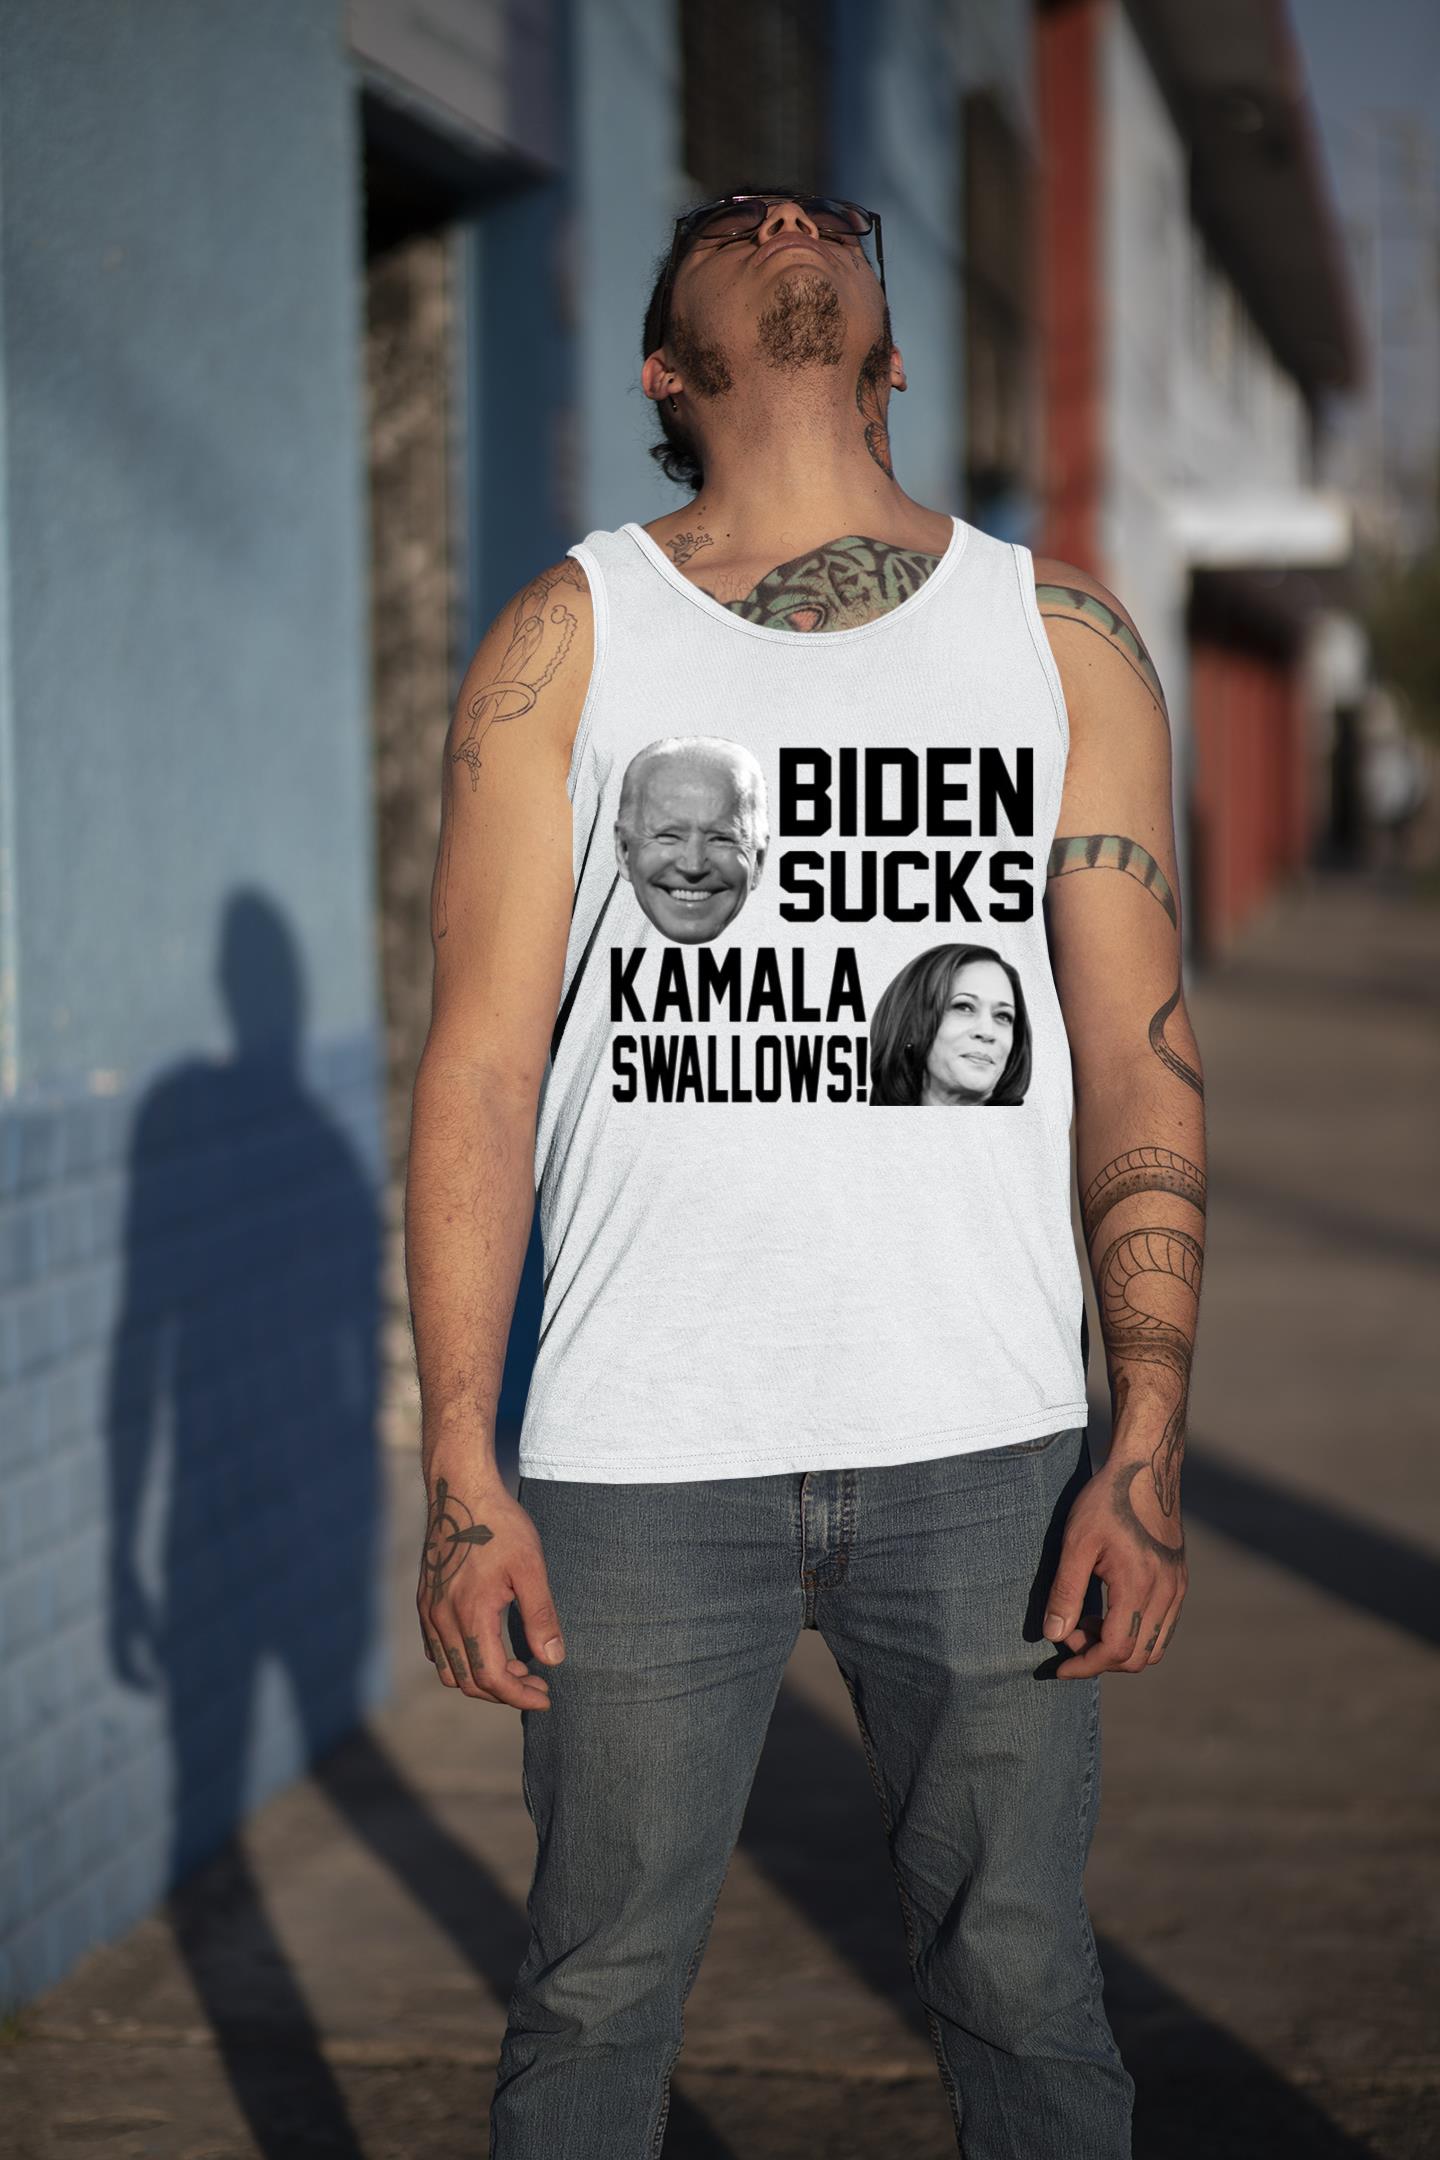 Kamala swallows Biden sucks shirt 3